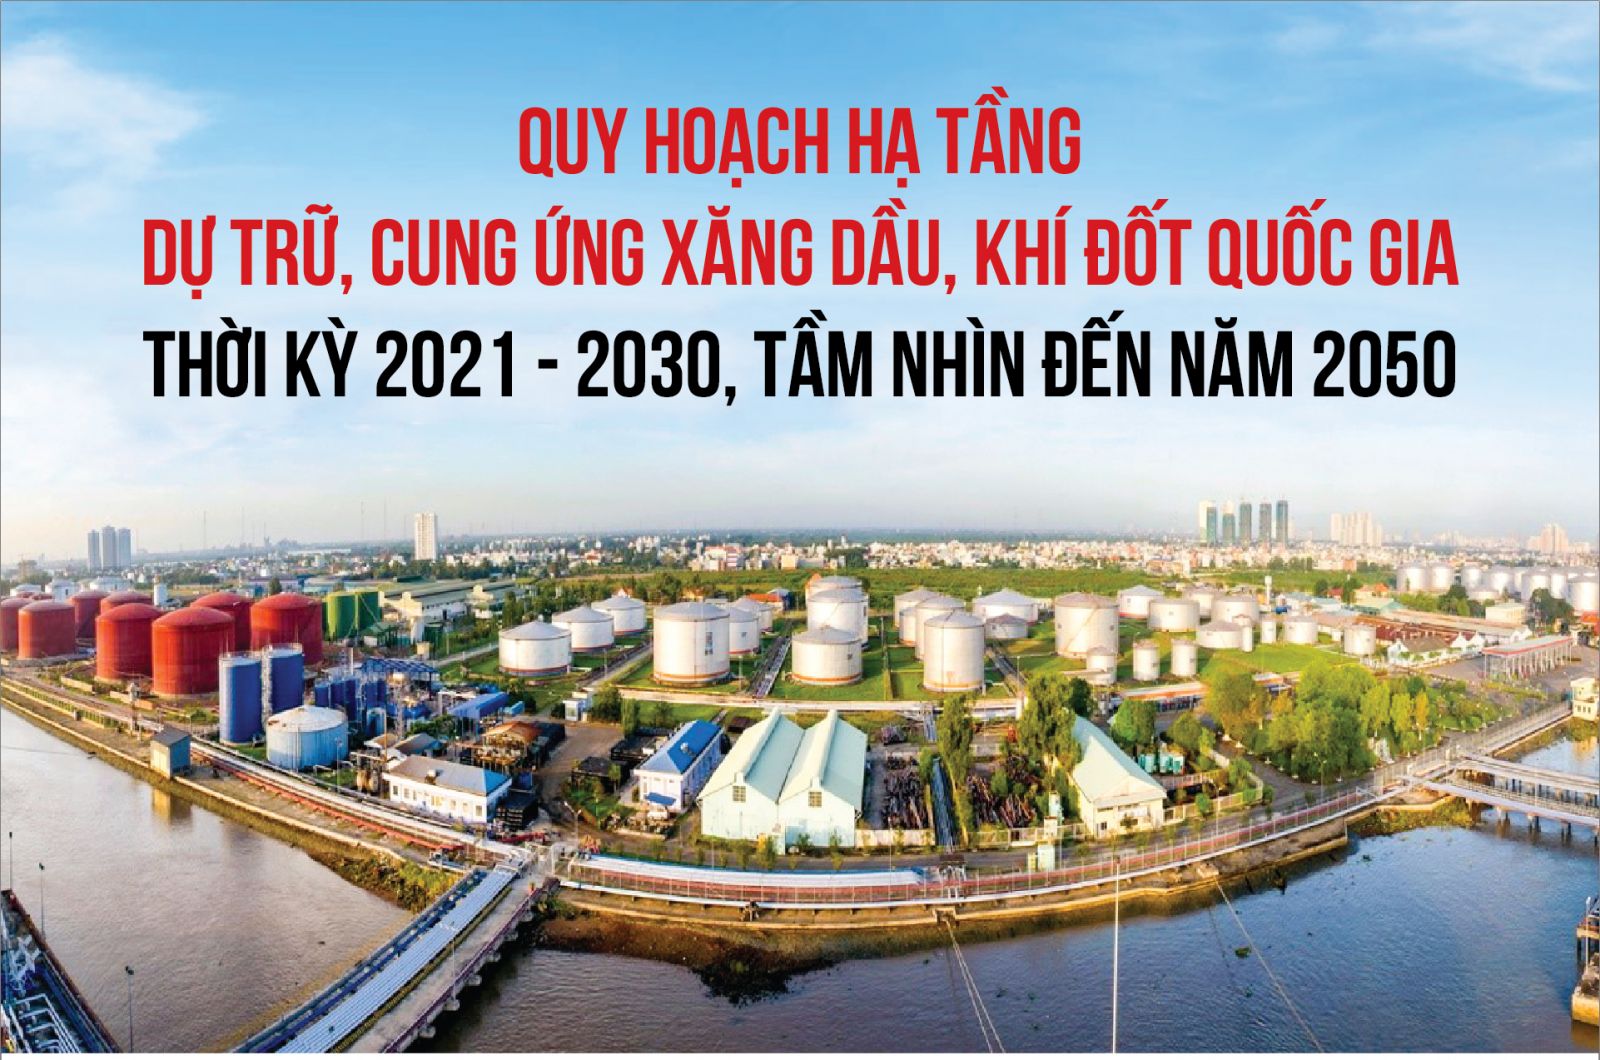 Quy hoạch hạ tầng dự trữ, cung ứng xăng dầu, khí đốt quốc gia thời kỳ 2021-2030, tầm nhìn 2050